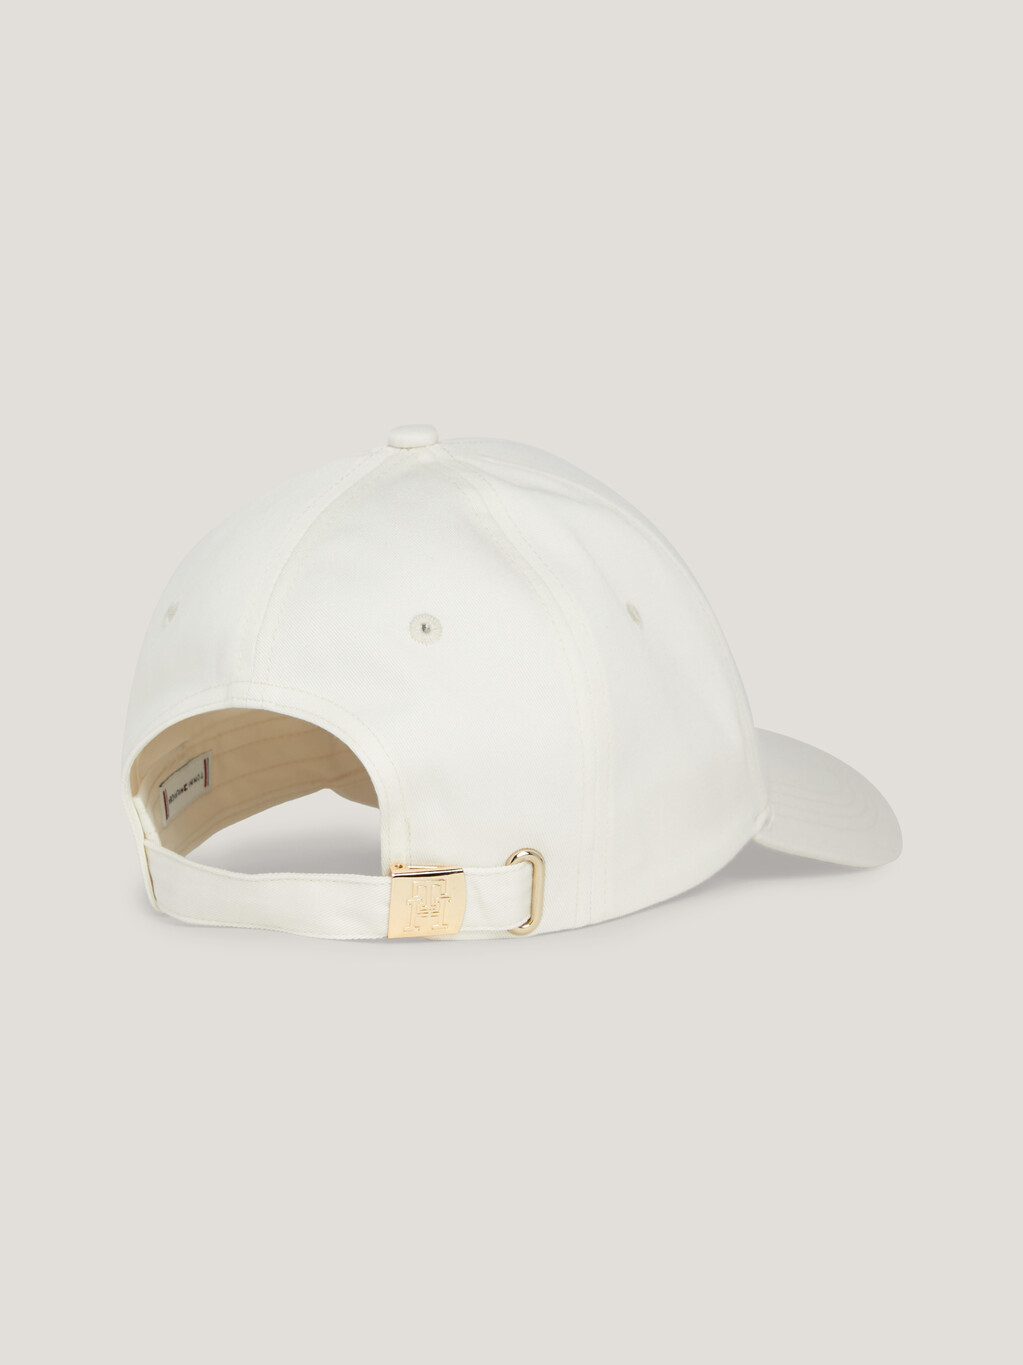 Essential Chic TH Monogram棒球帽, Calico, hi-res